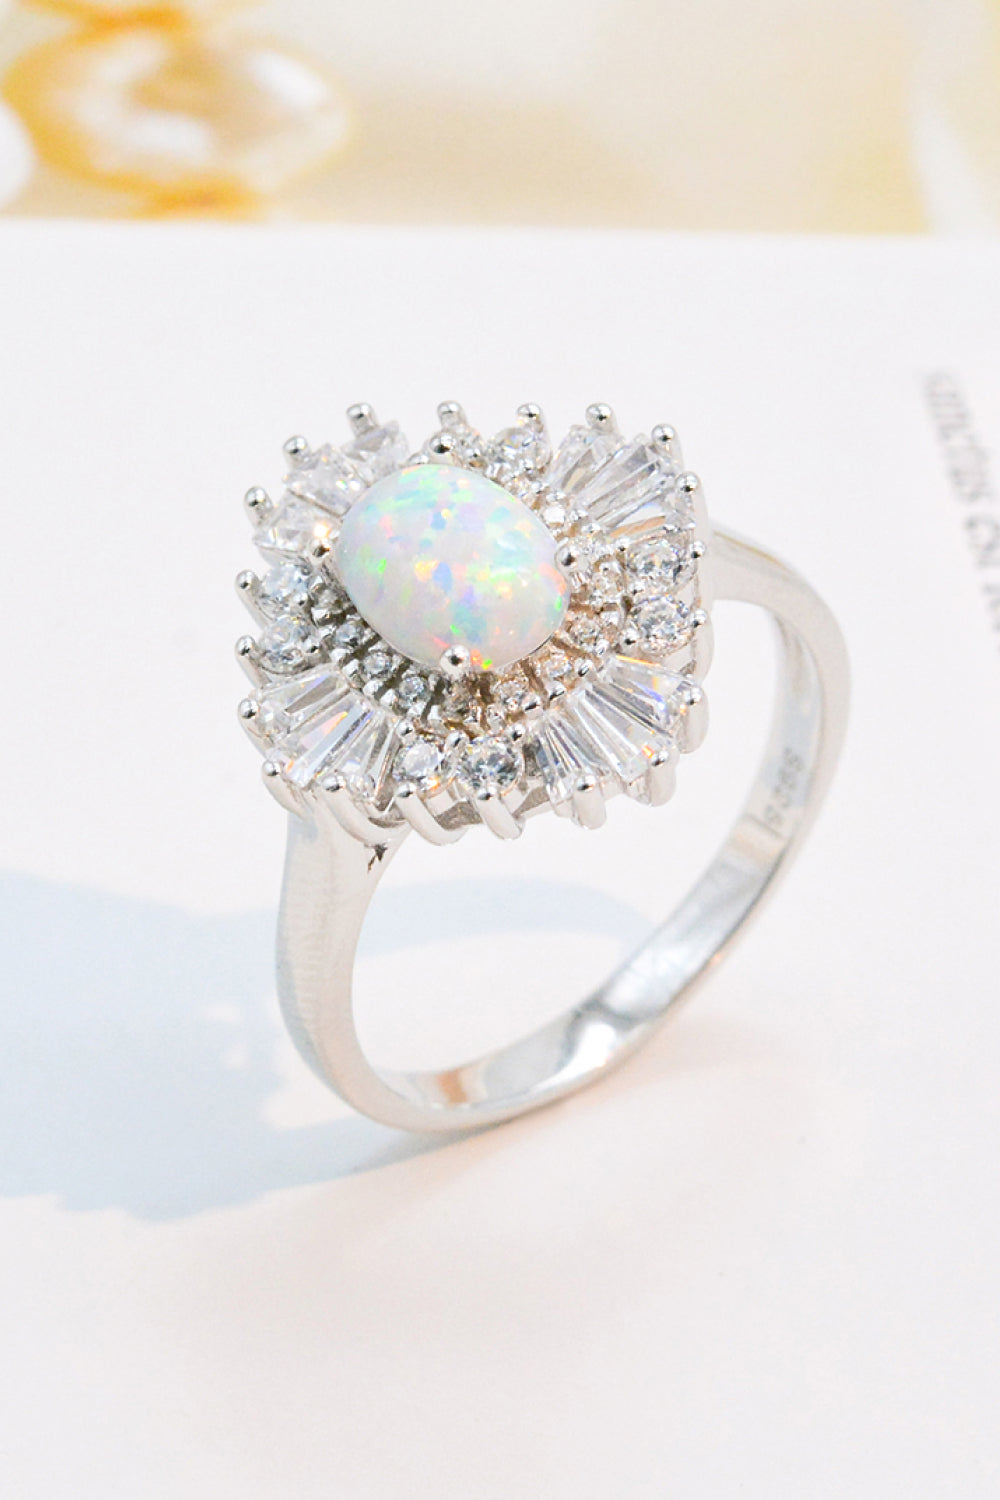 Women’s Modern 925 Sterling Silver Opal Halo Ring